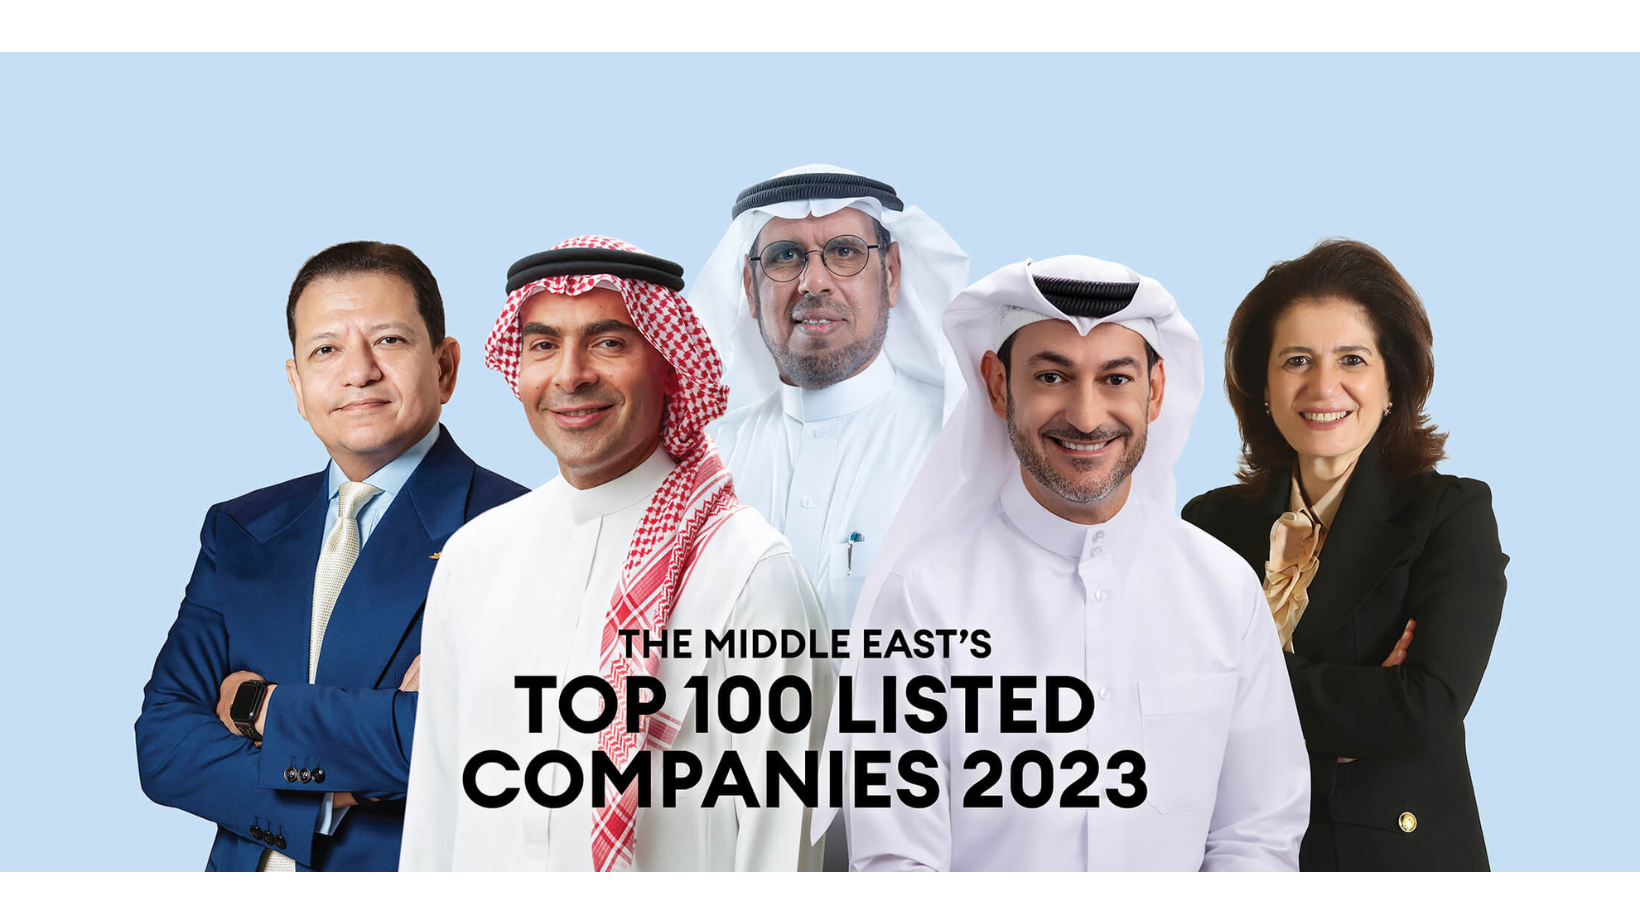 bahraini companies, forbes middle east 2023, forbes, forbes middle east top 100 listed companies 2023, localbh, local bahrain, alba, NBB, ABC, bahrain news, powerful bahrain companies